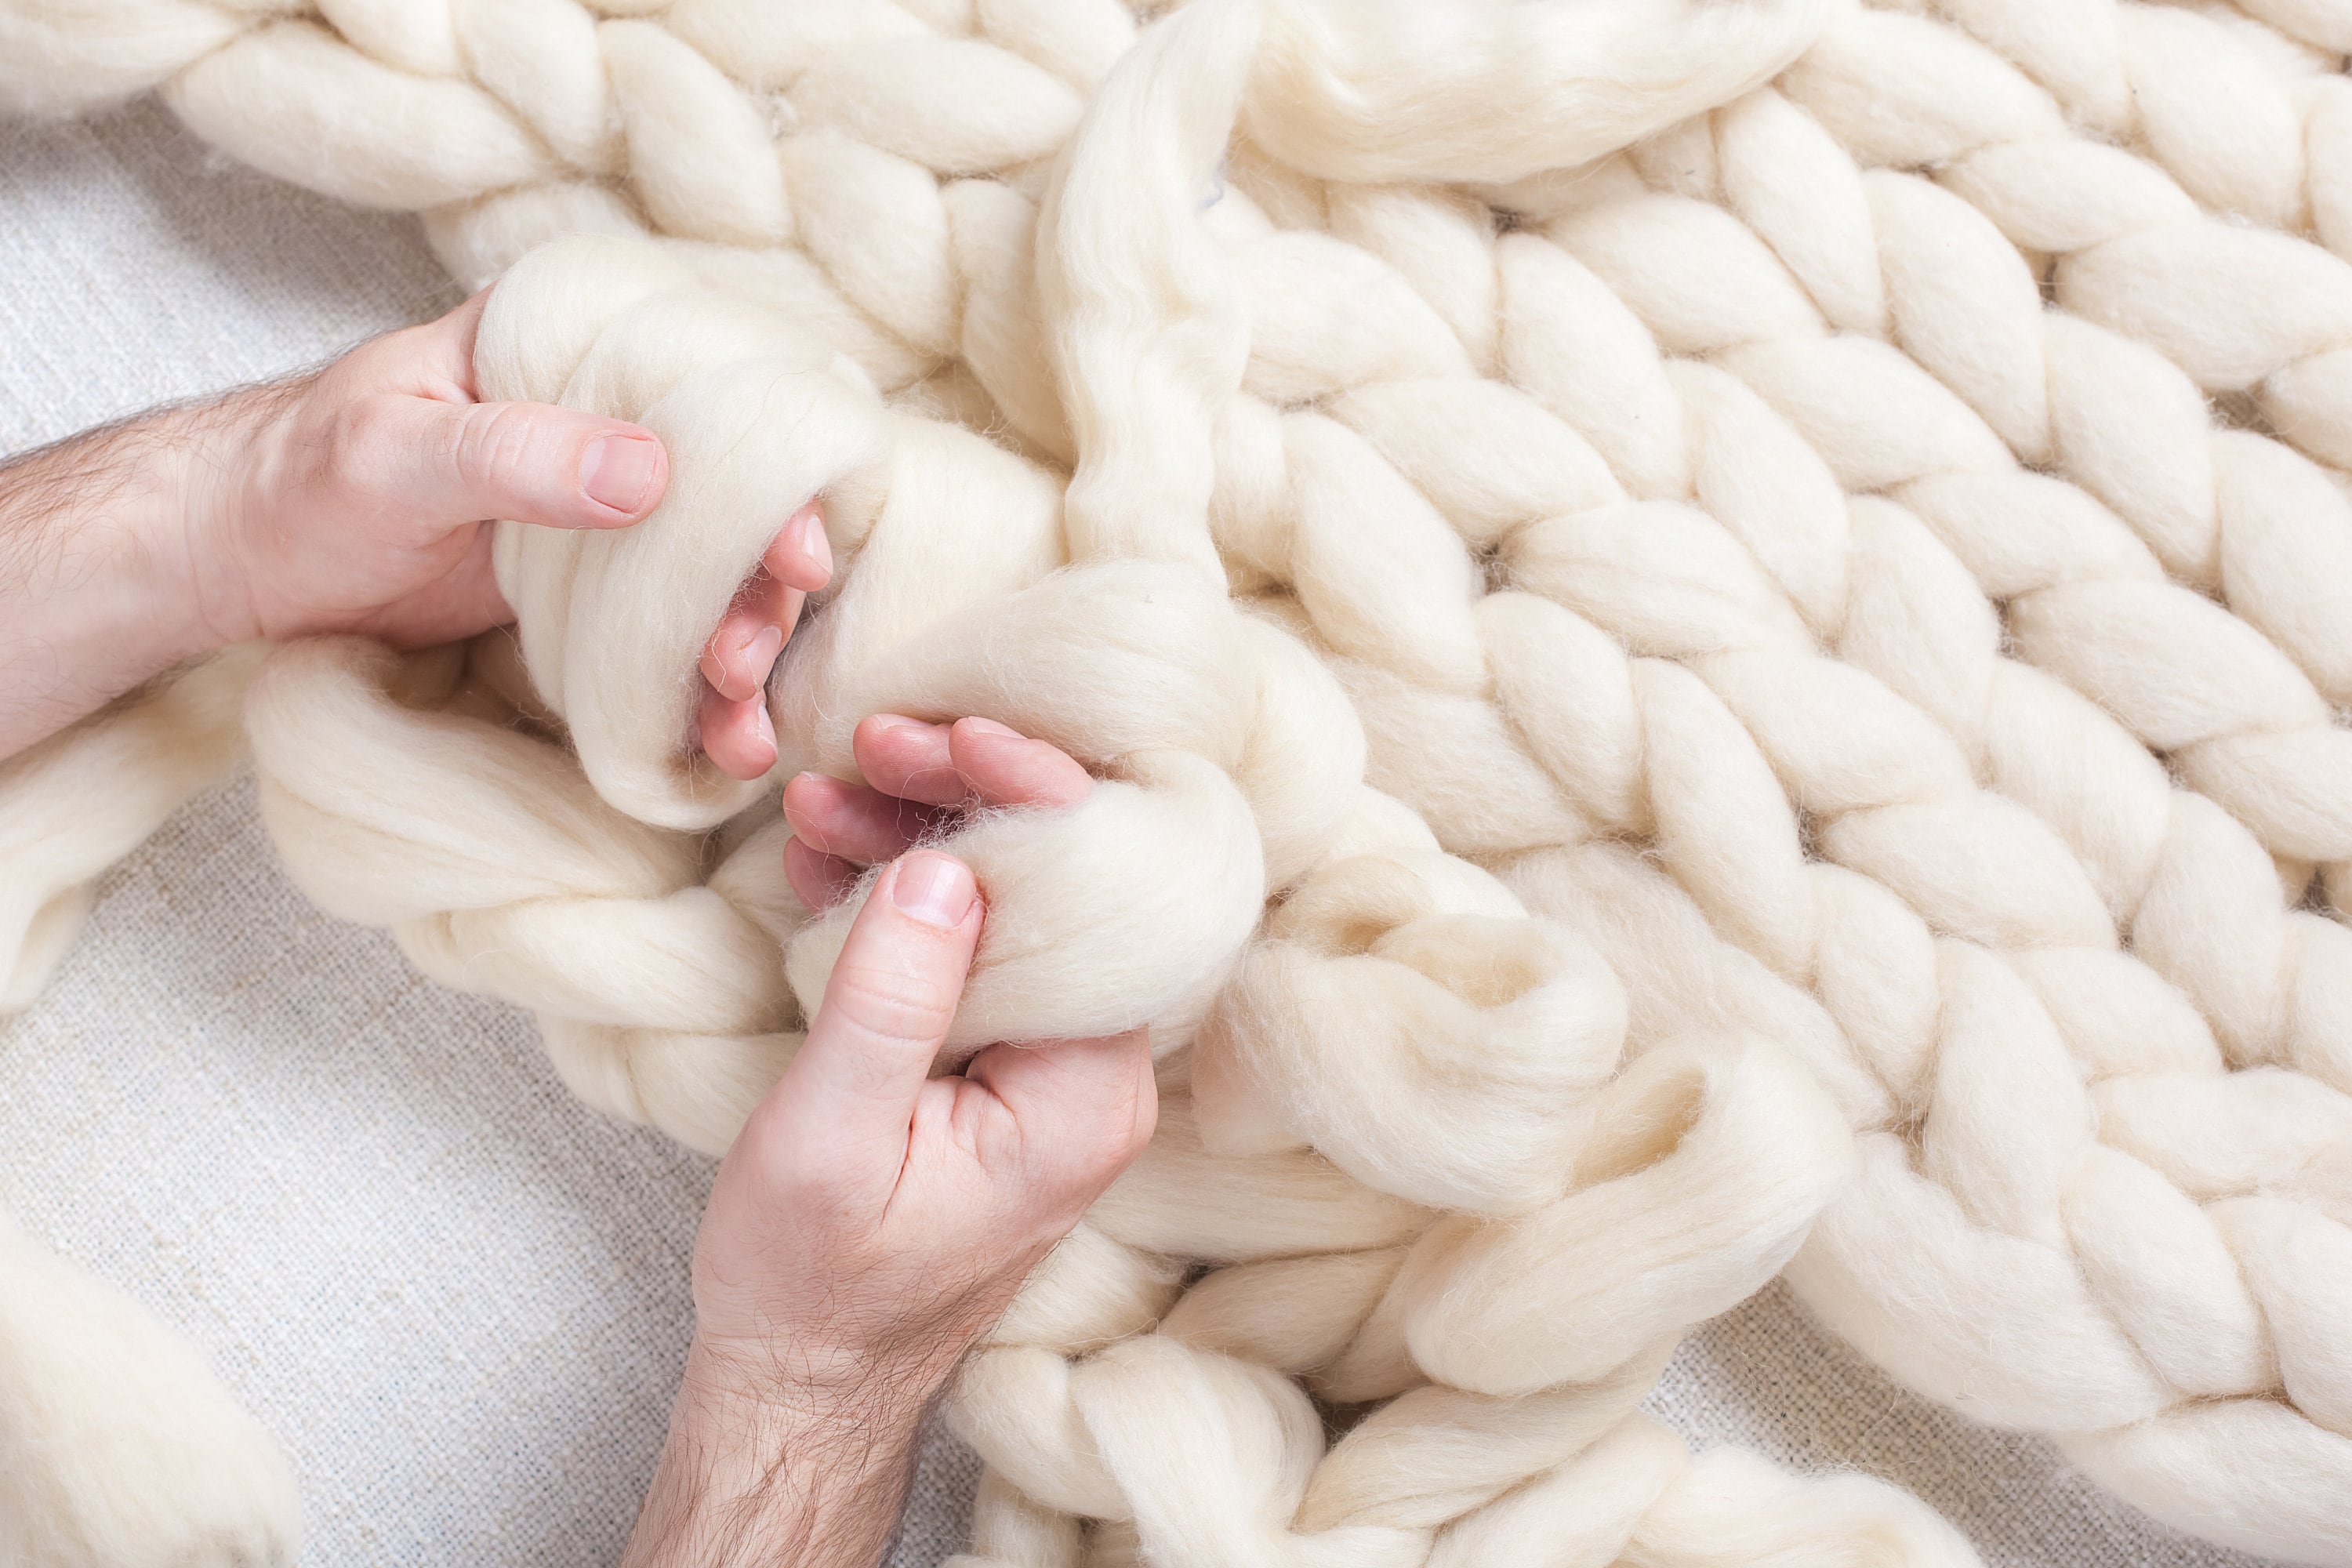 Wool Super Chunky Yarn Big Roving Yarn for Knitting Crocheting Felting,  Blanket Yarn